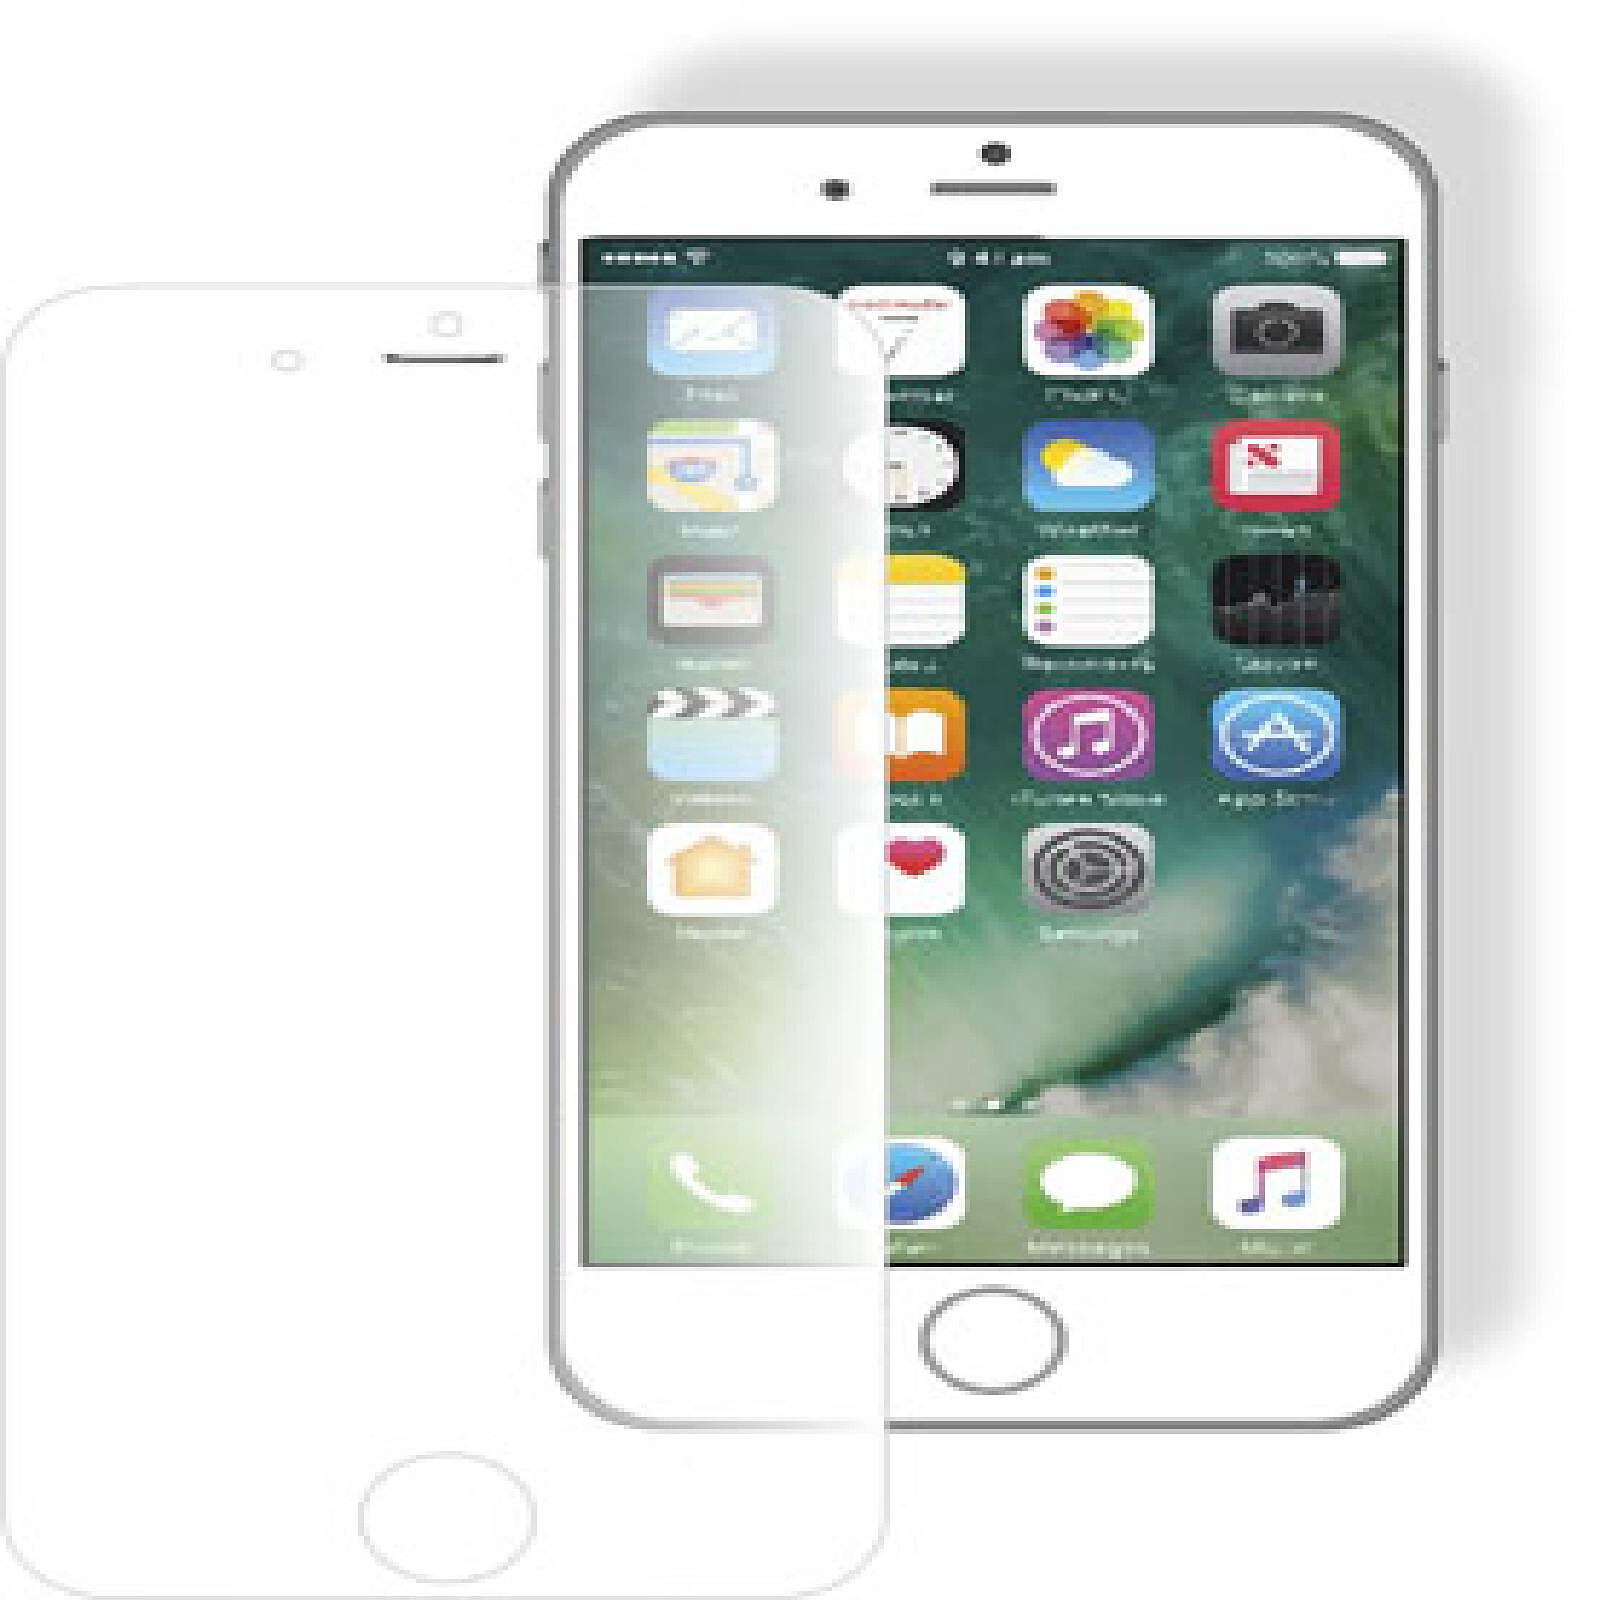 MW Verre Easy glass Case Friendly pour iPhone 14 Pro - Protection écran -  LDLC